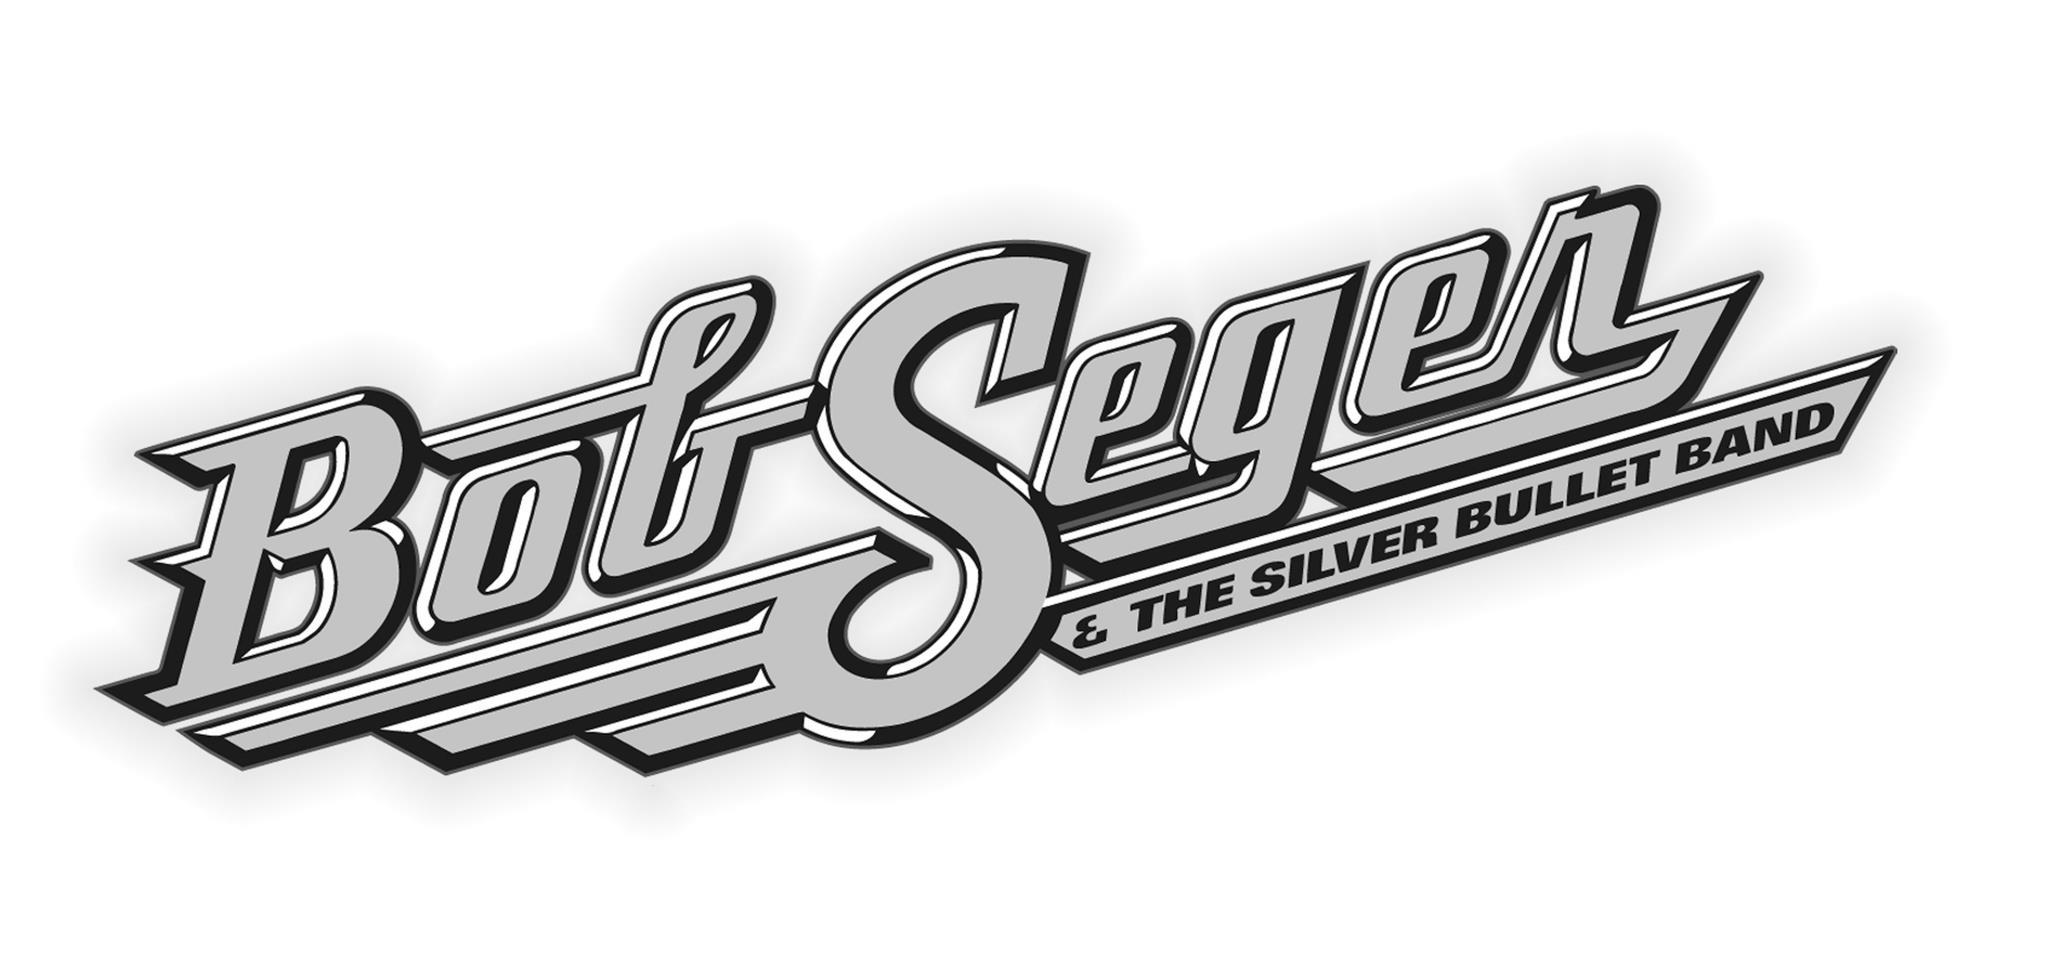 Bob Seger Logo - bob-seger-sulver-bullet-band-logo – Marko's Music Blog